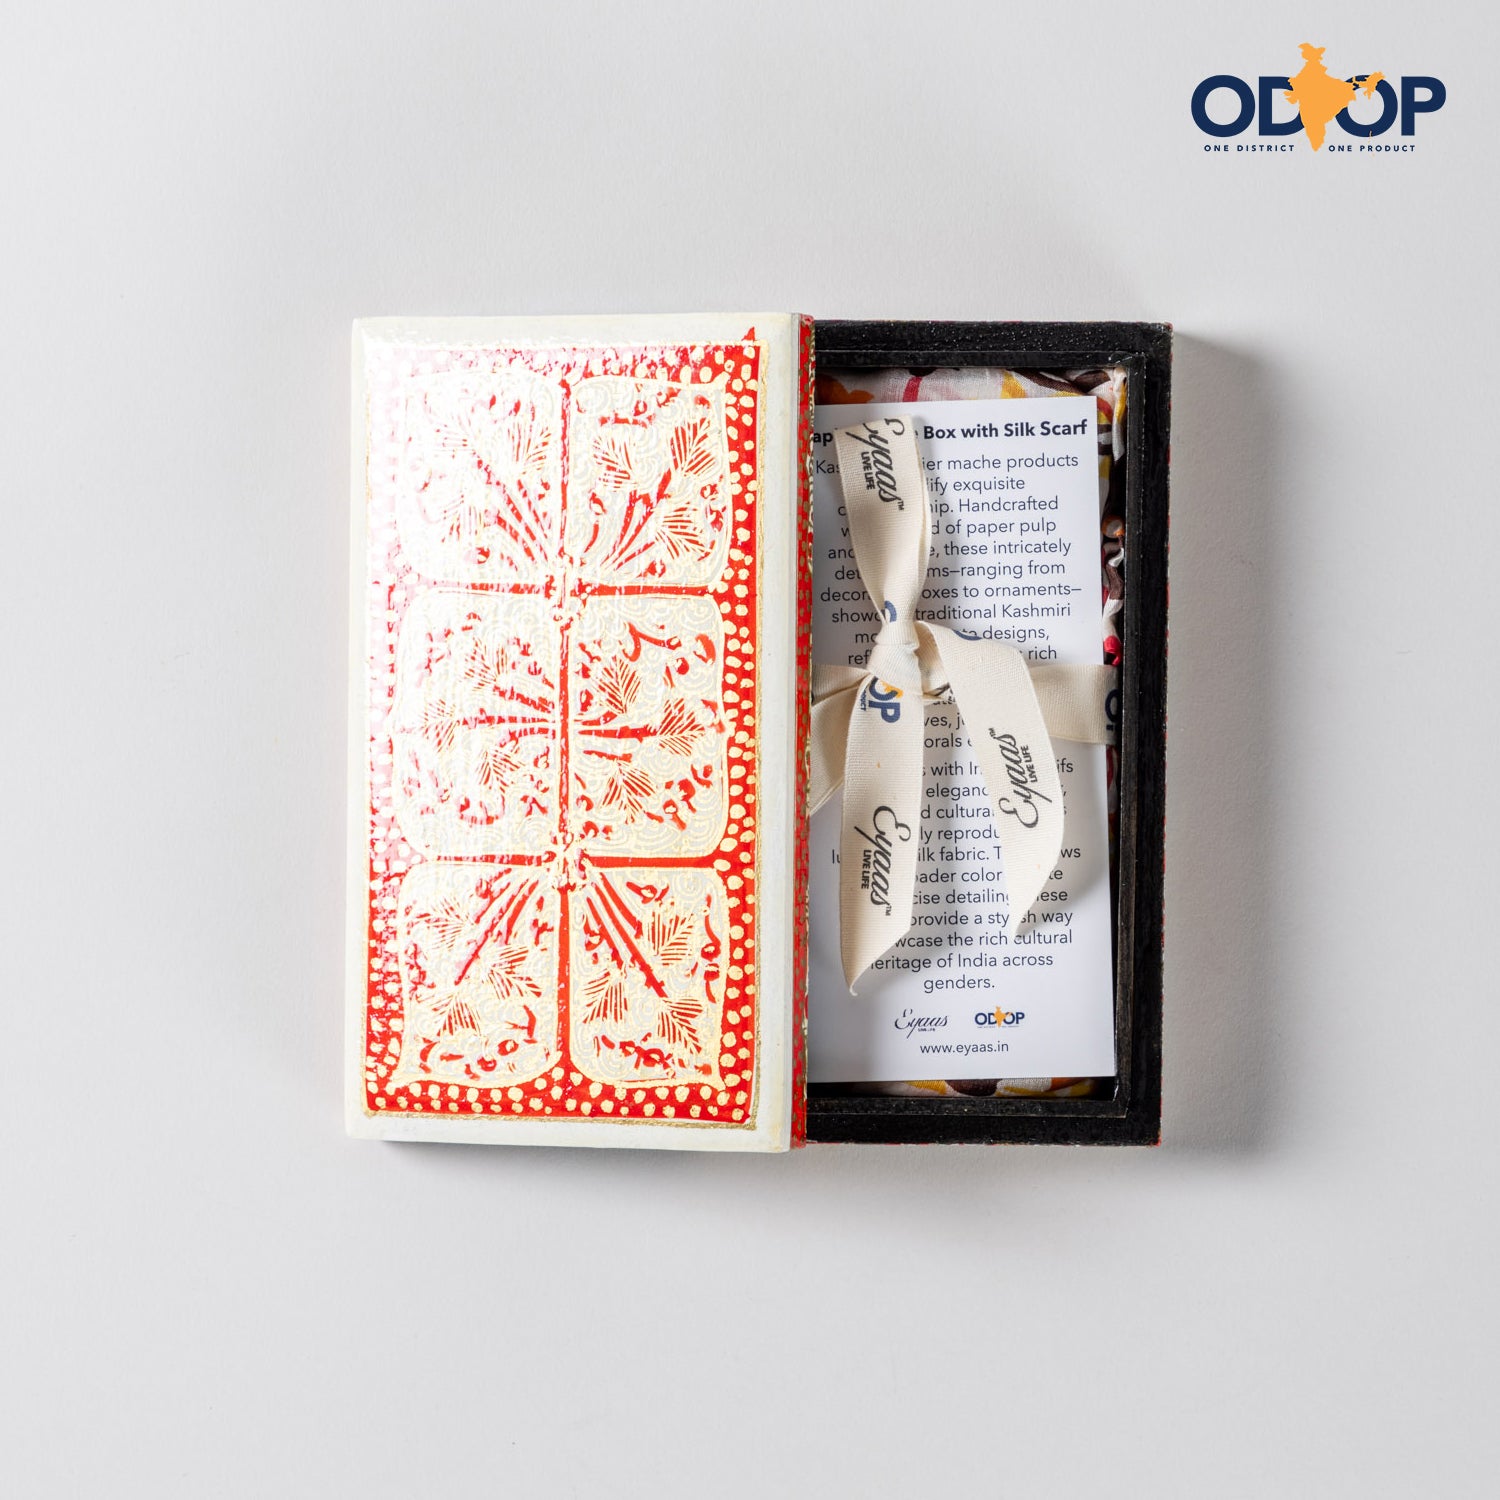 Papier Mache Gift Box with Silk Scarf - Orange Gold